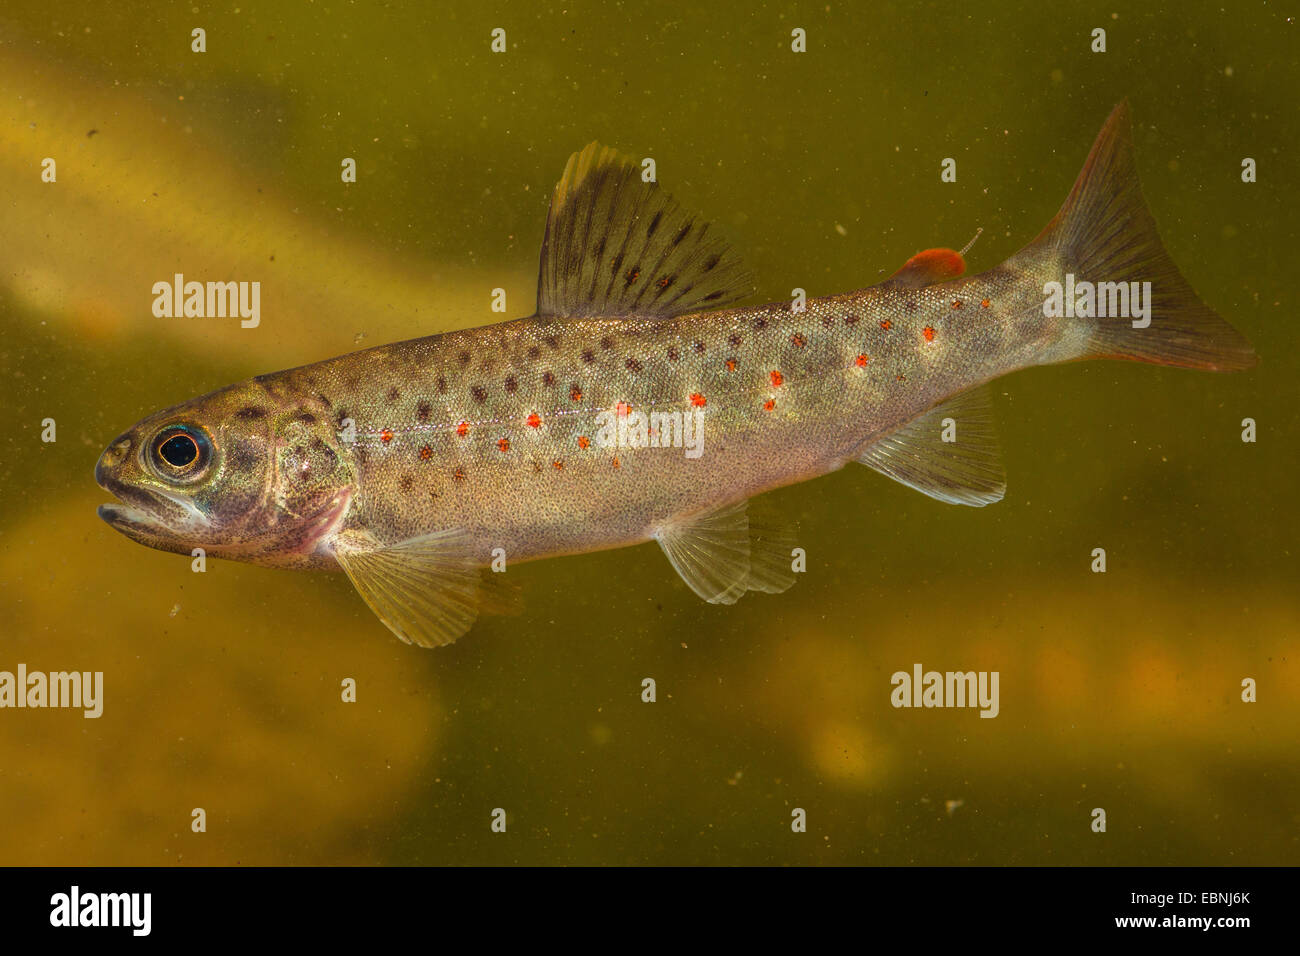 brown trout, river trout, brook trout (Salmo trutta fario), juvenile Stock Photo